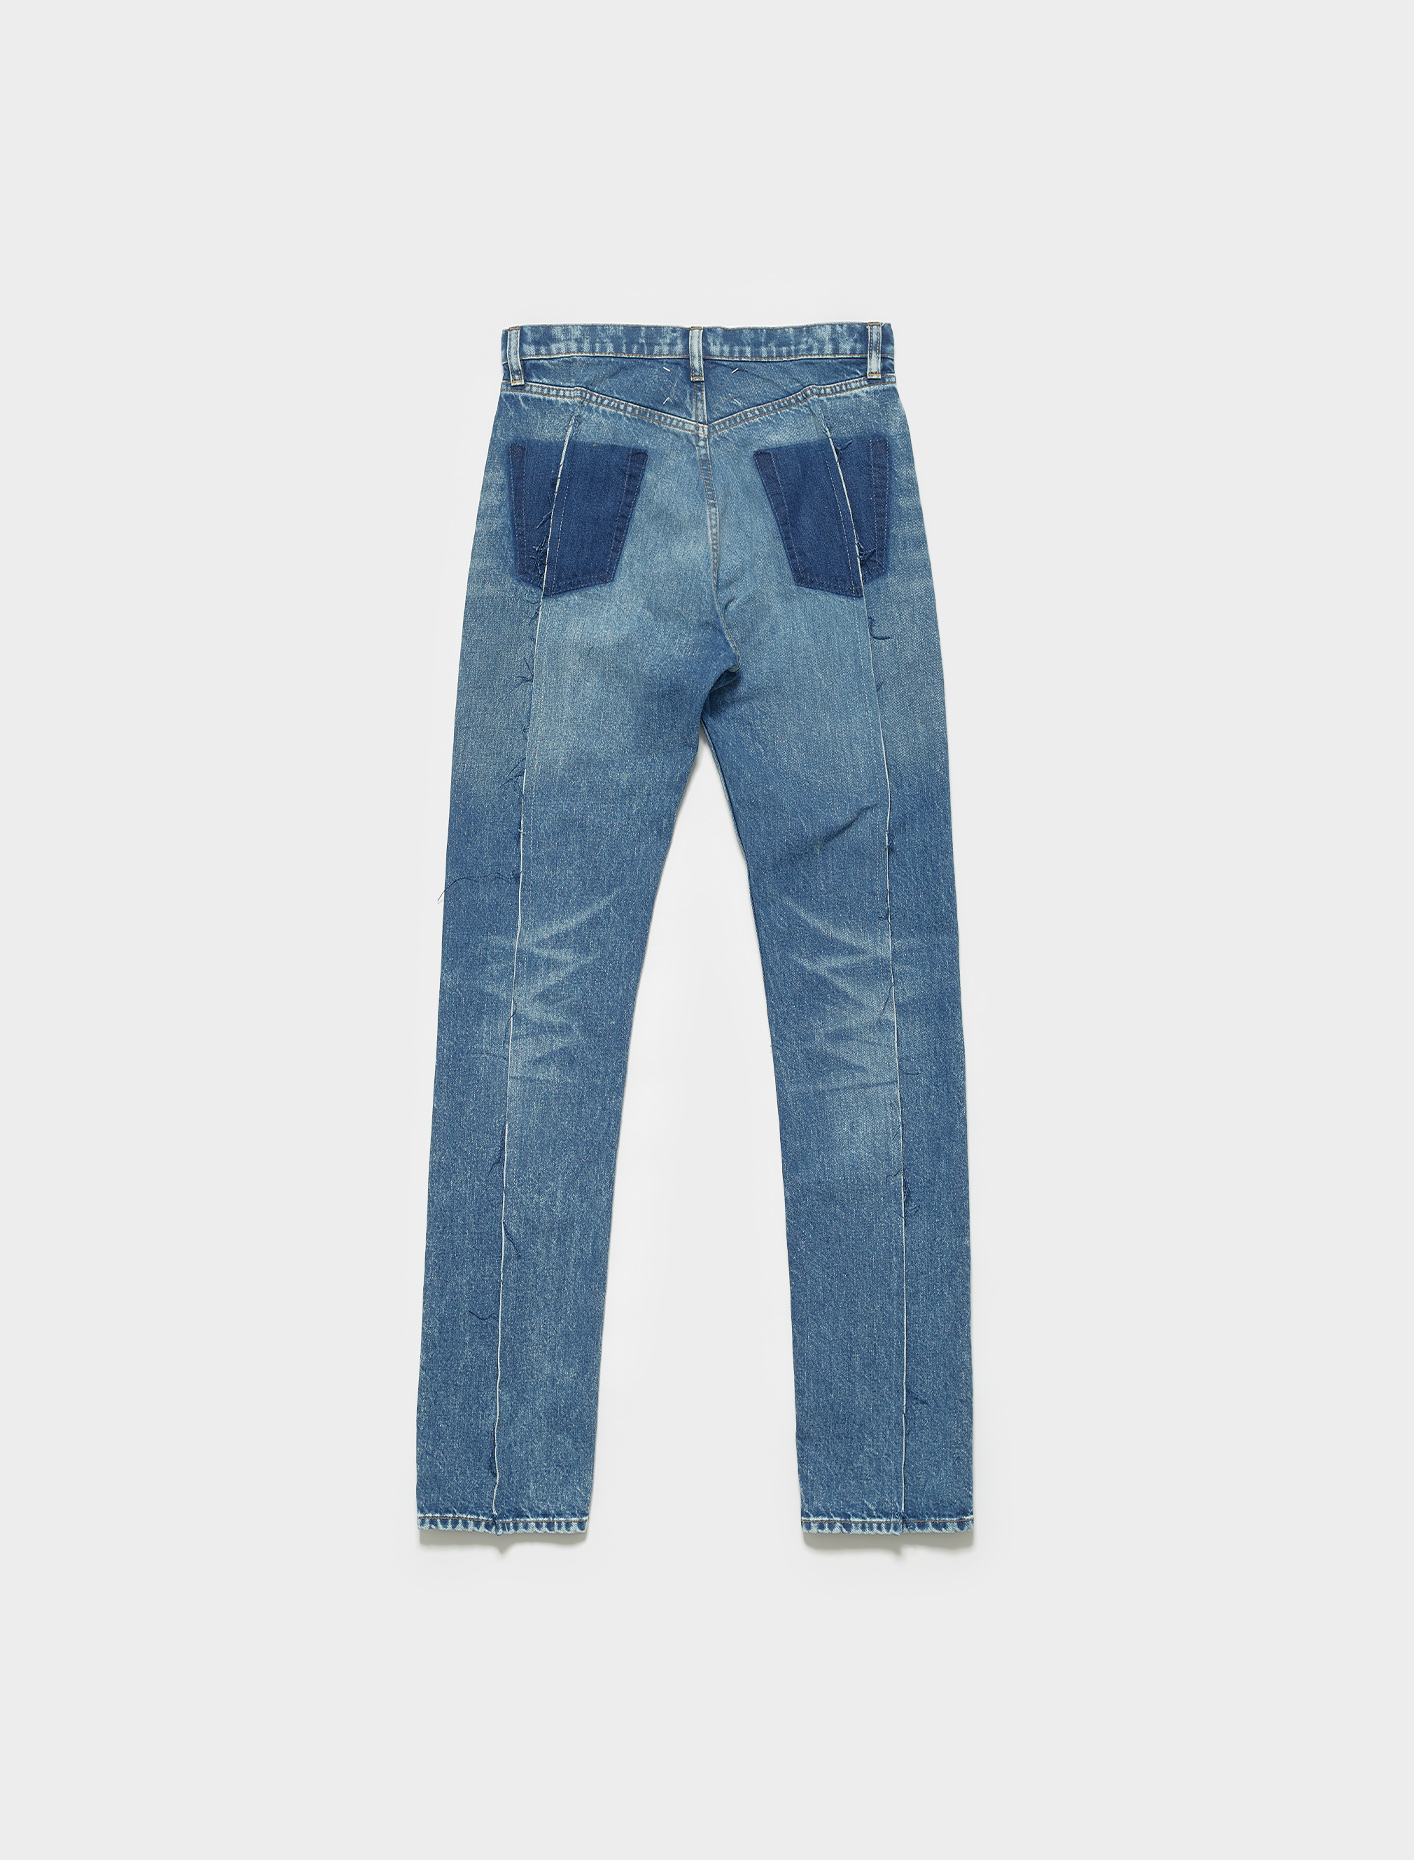 Maison Margiela Jeans in Blue Denim | Voo Store Berlin | Worldwide